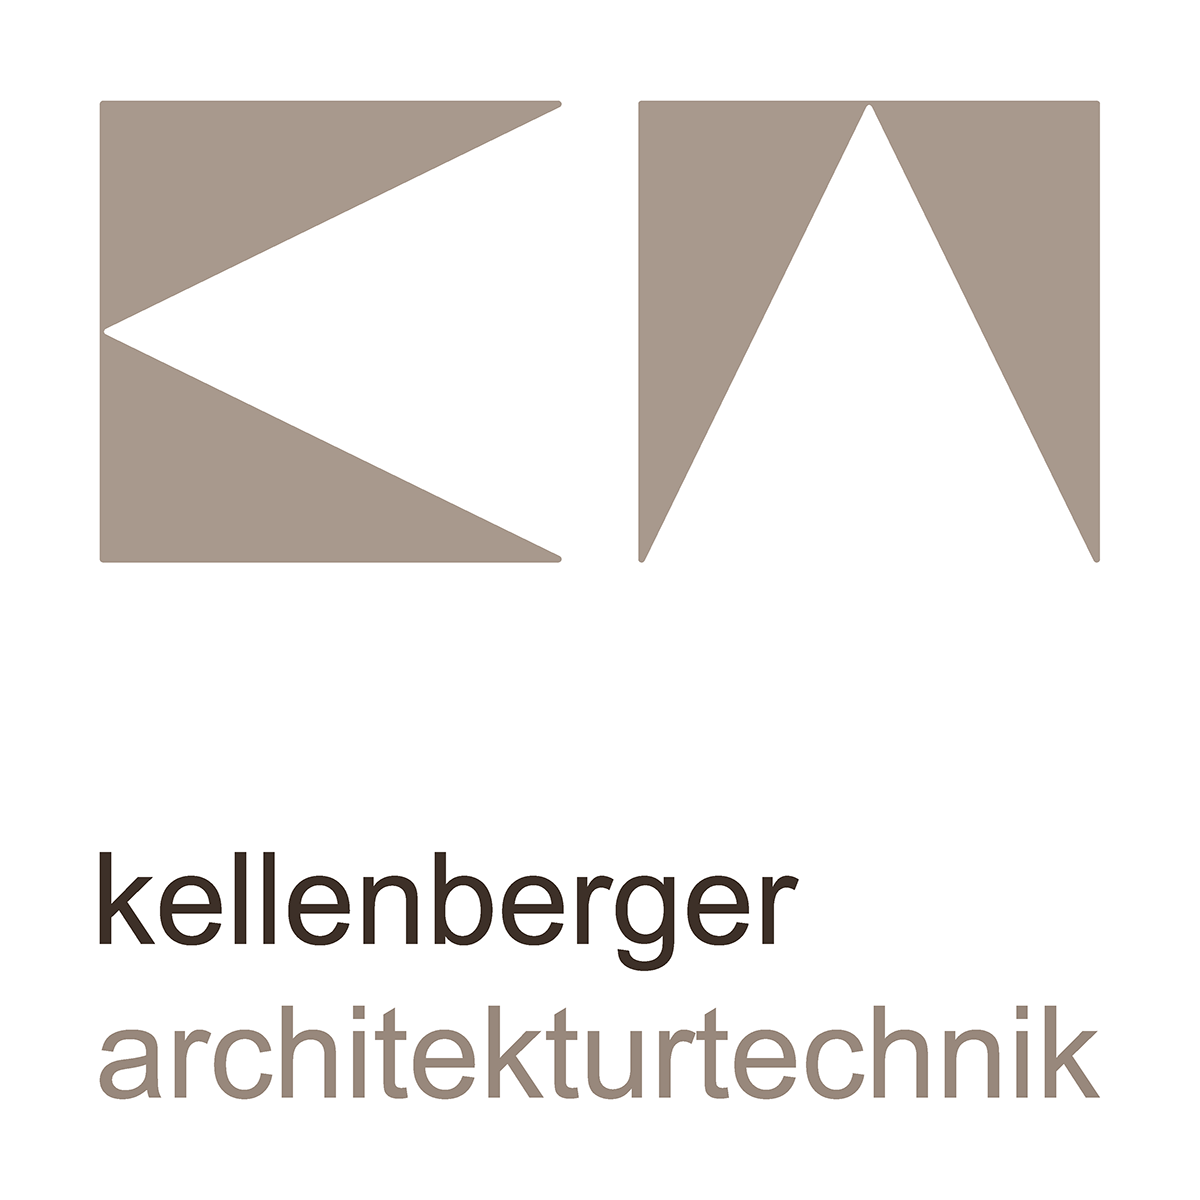 Firmenlogo der Kellenberger Architekturtechnik GmbH